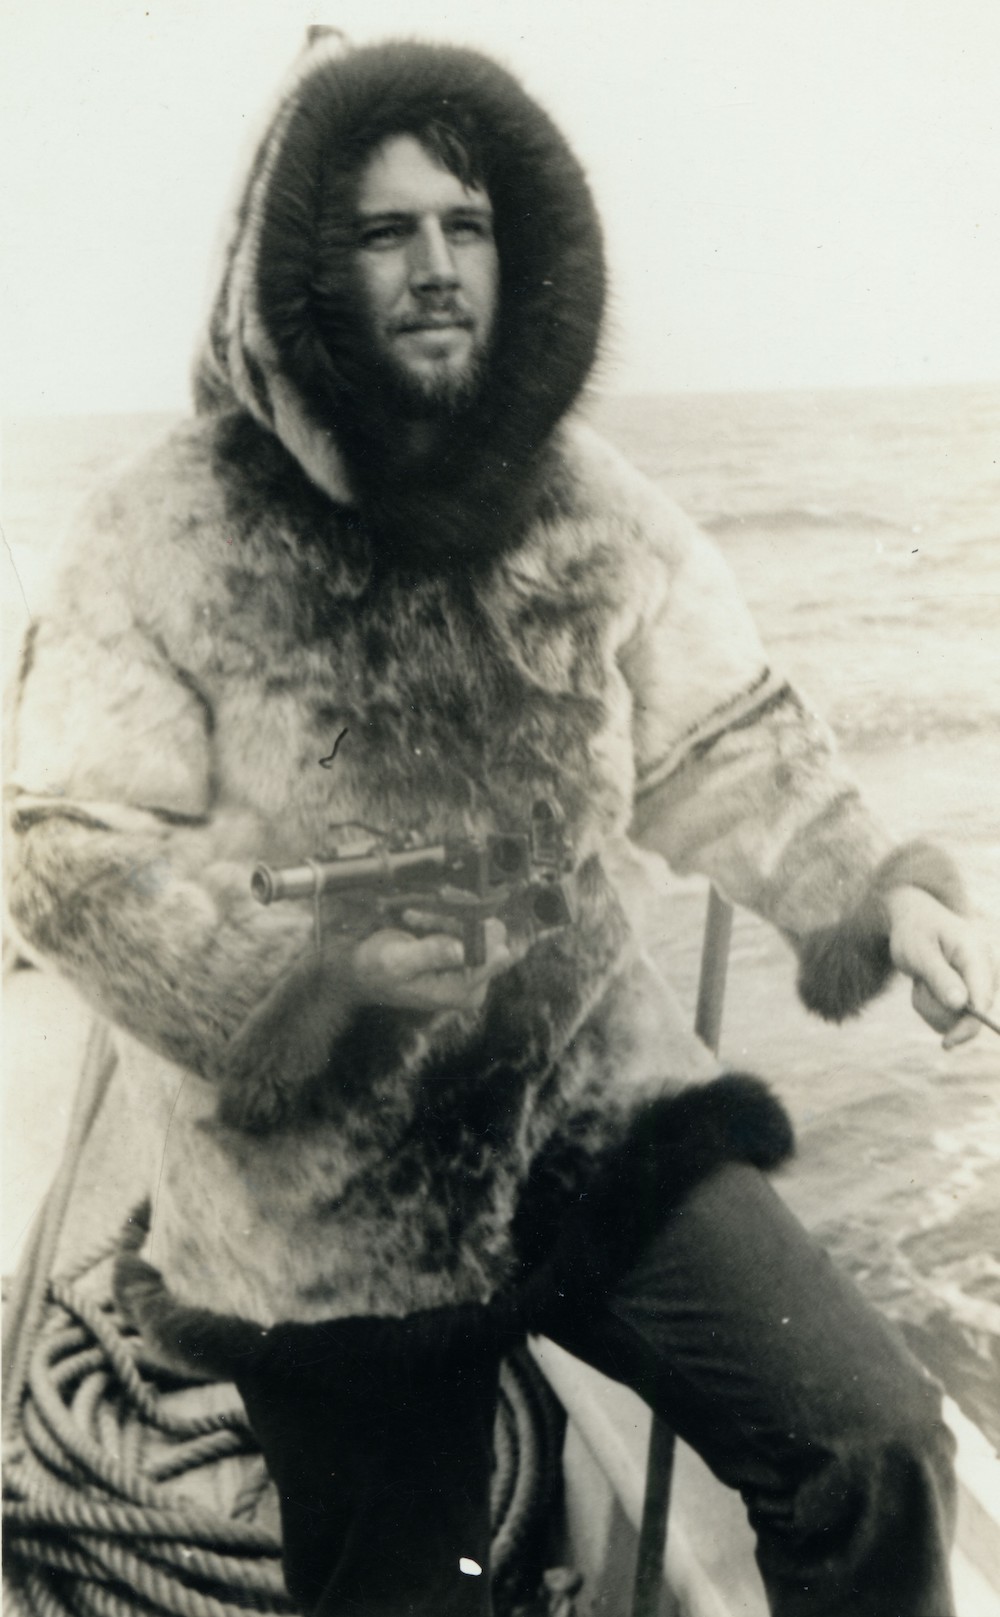 John Halford wearing a sealskin jacket